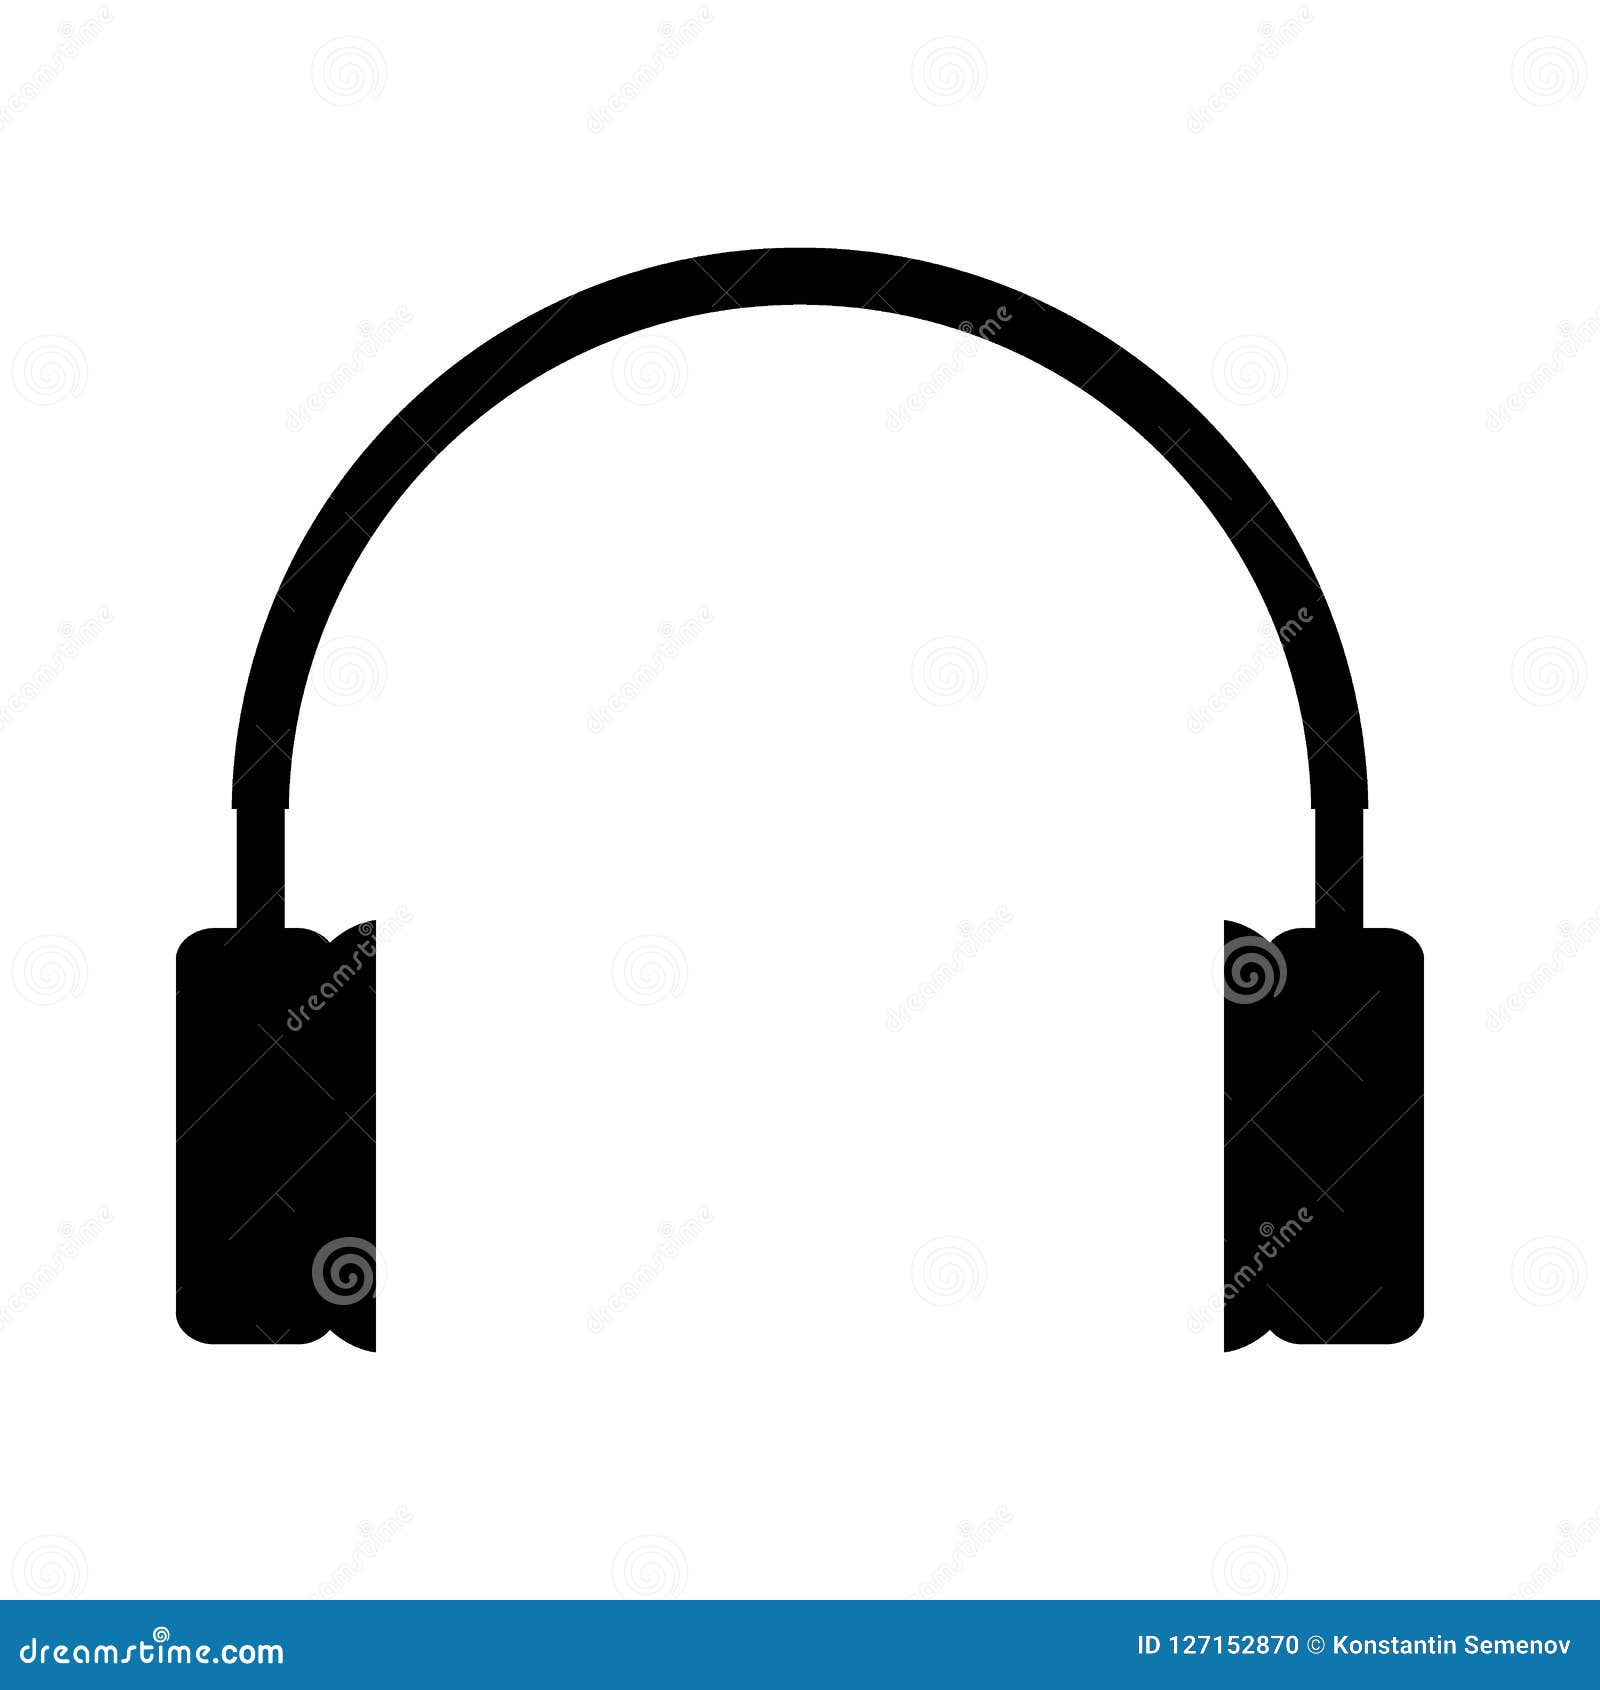 headphones icon on white.